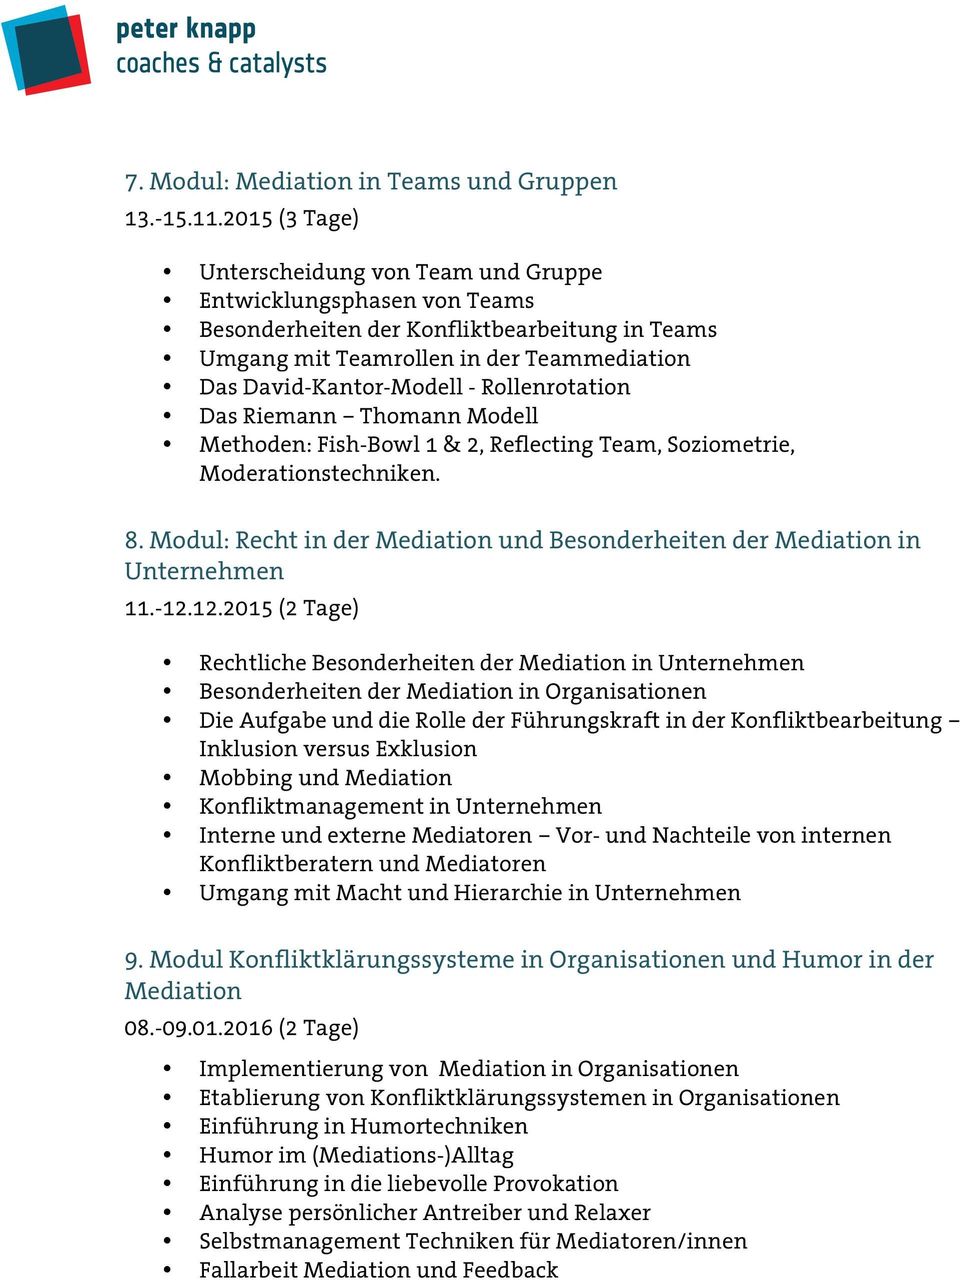 Rollenrotation Das Riemann Thomann Modell Methoden: Fish-Bowl 1 & 2, Reflecting Team, Soziometrie, Moderationstechniken. 8. Modul: Recht in der und Besonderheiten der in Unternehmen 11.-12.